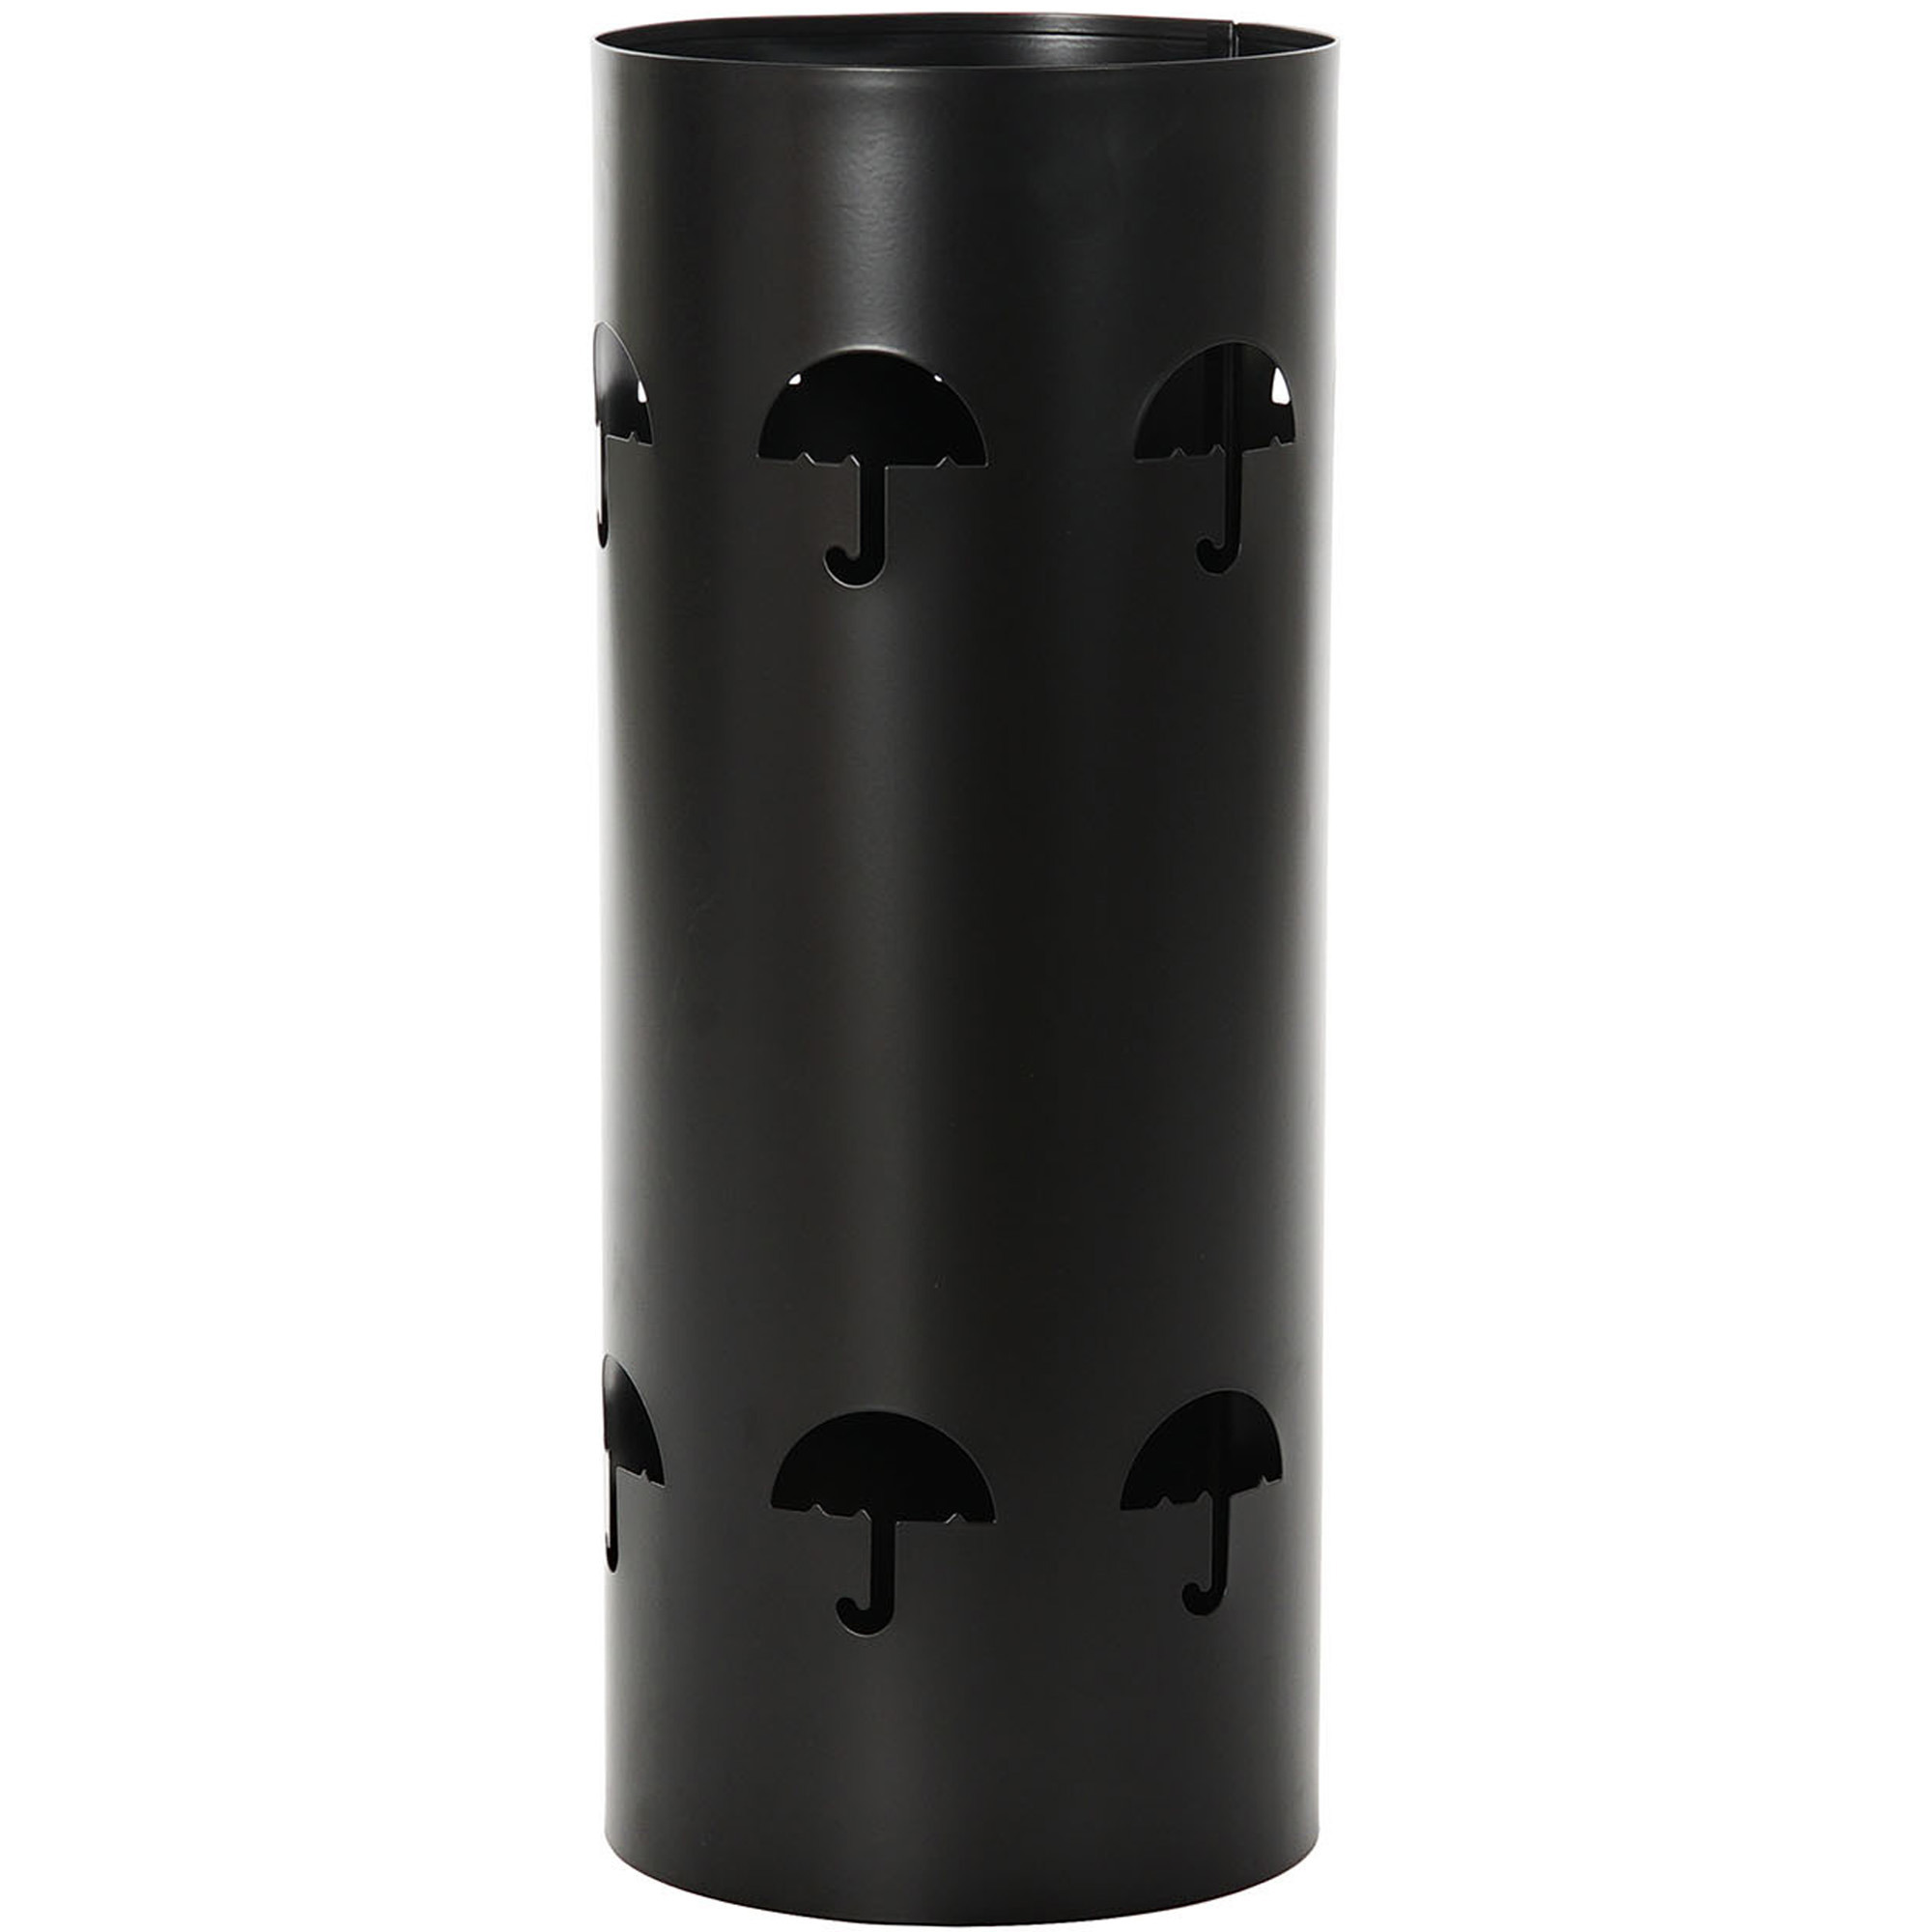 Items Paraplubak/parapluhouder - zwart - metaal met decoraties - D20 x H47 cm -